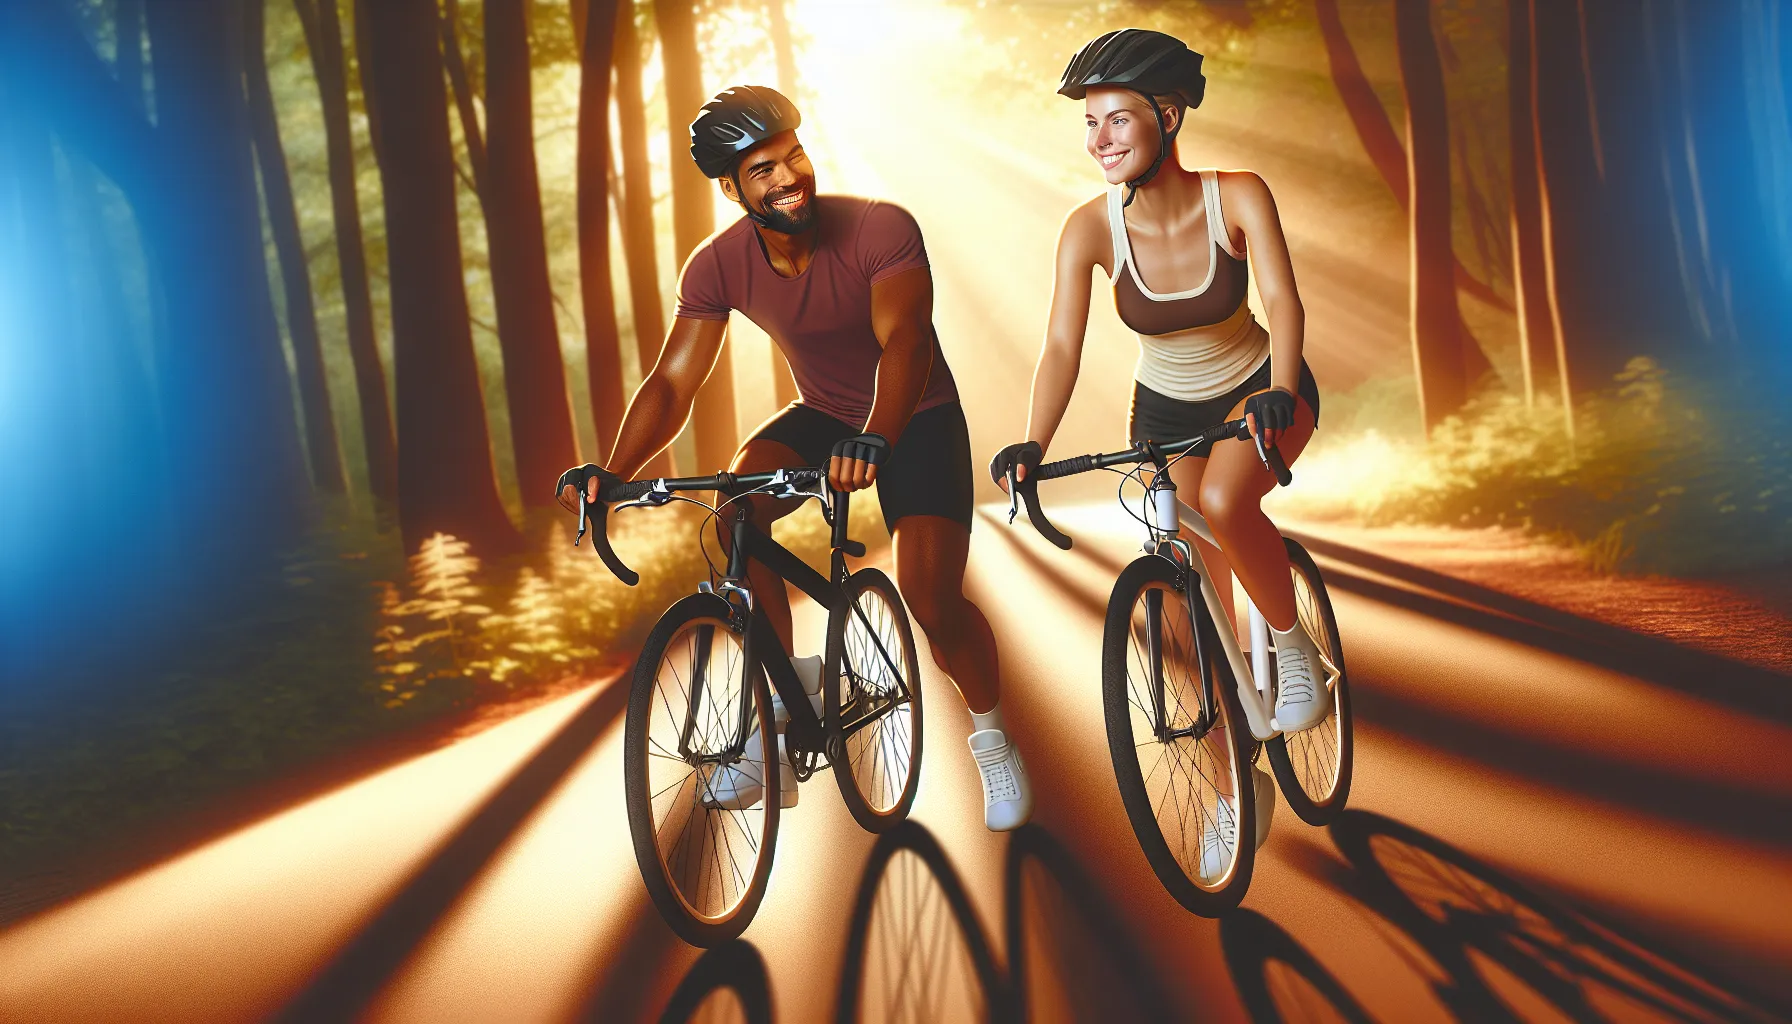 O ciclismo é uma atividade que vai além do simples ato de pedalar. Além de ser uma forma de exercício físico, o ciclismo também pode ser uma maneira de construir amizades duradouras.

Quando você sai para um passeio de bicicleta com amigos, você tem a oportunidade de compartilhar experiências, conversar e se divertir juntos. Através desses momentos, você pode criar la